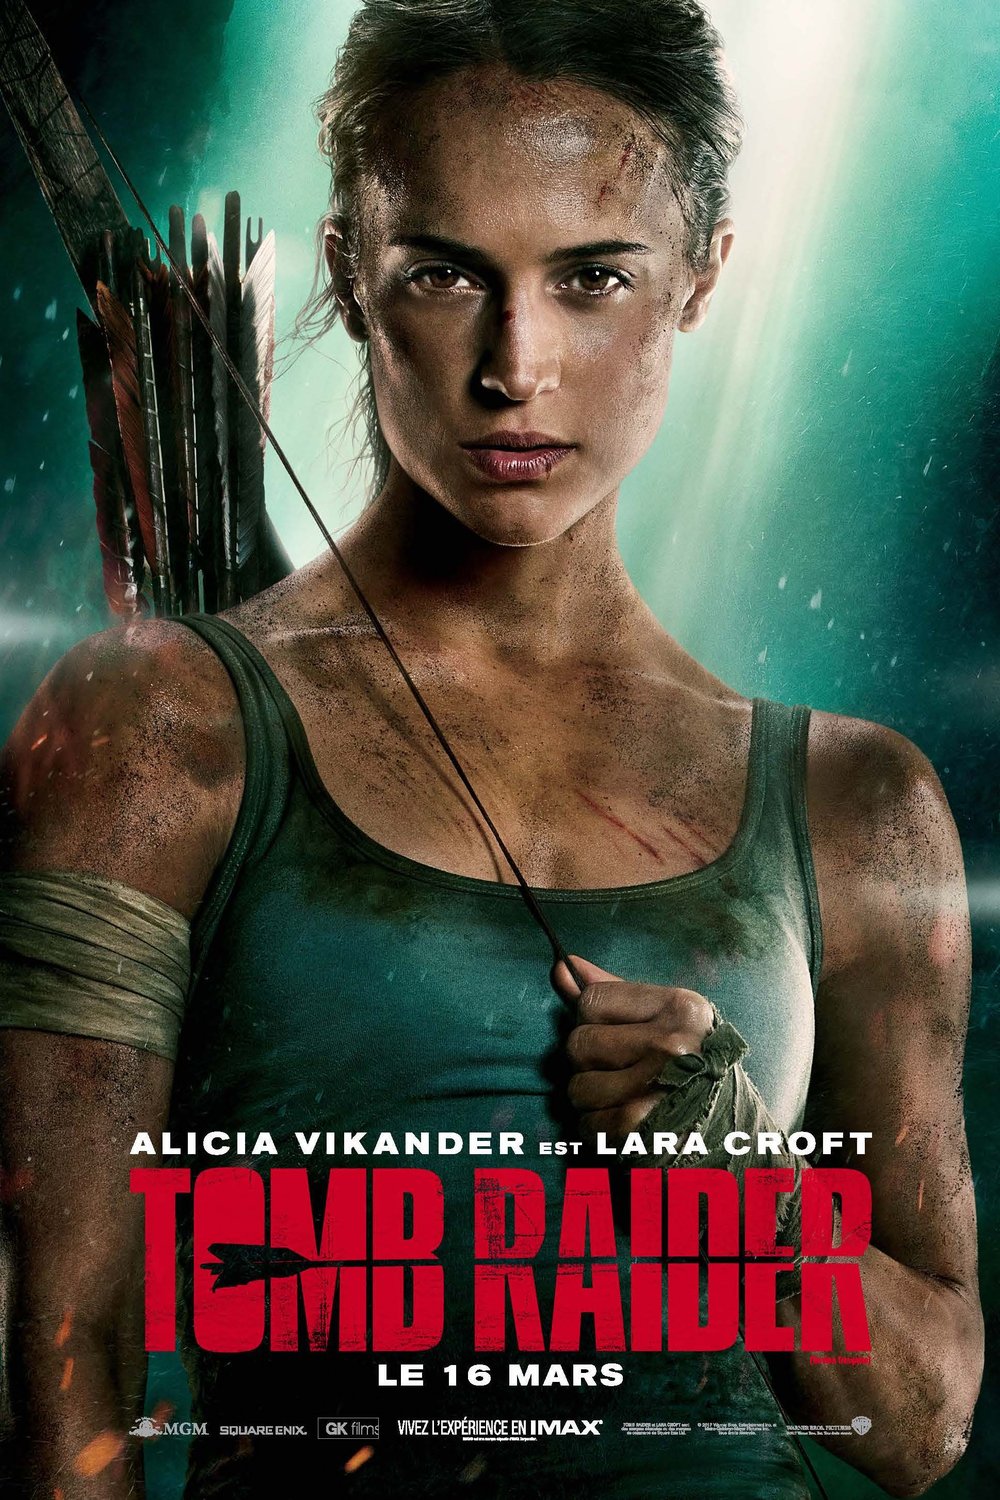 L'affiche du film Tomb Raider v.f.